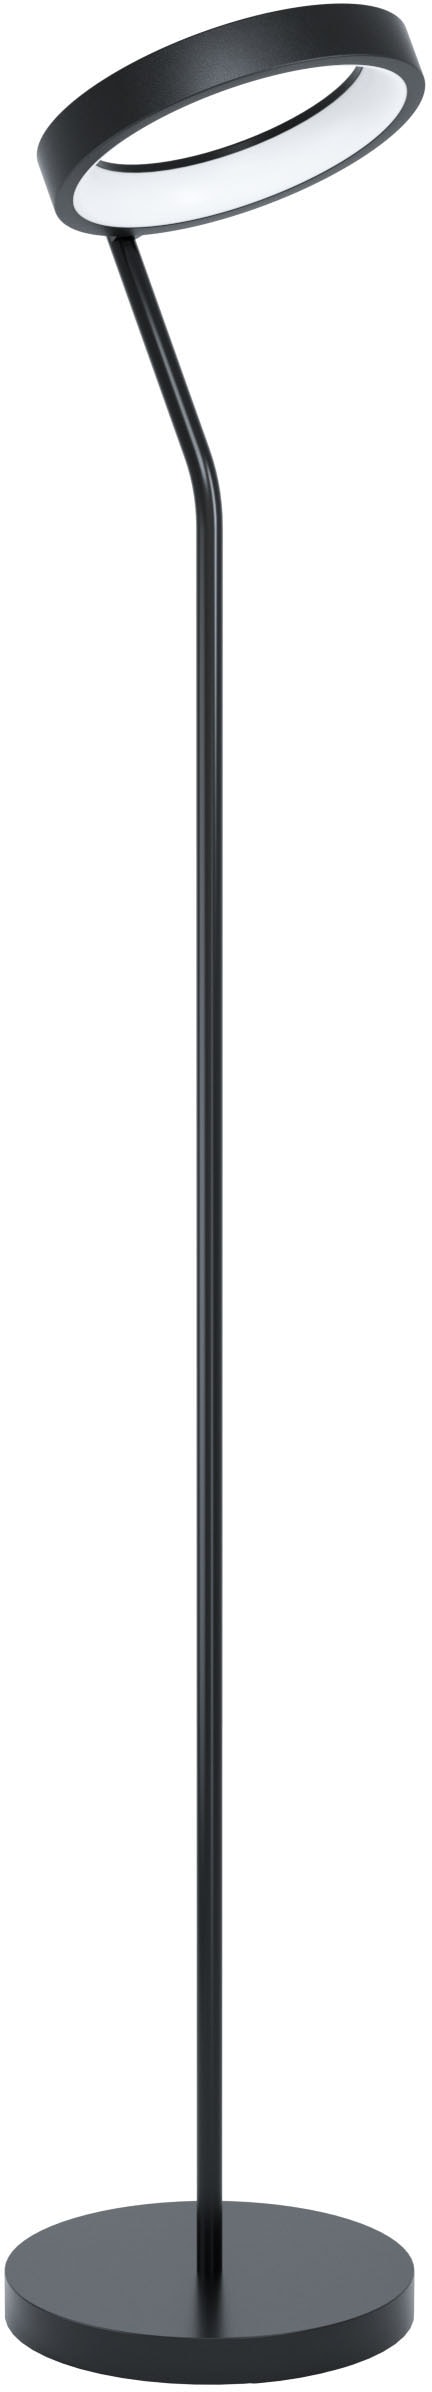 EGLO Stehlampe »MARGHERA-Z«, Stehleuchte in schwarz aus Stahl - 4X4W - warmweiß - kaltweiß